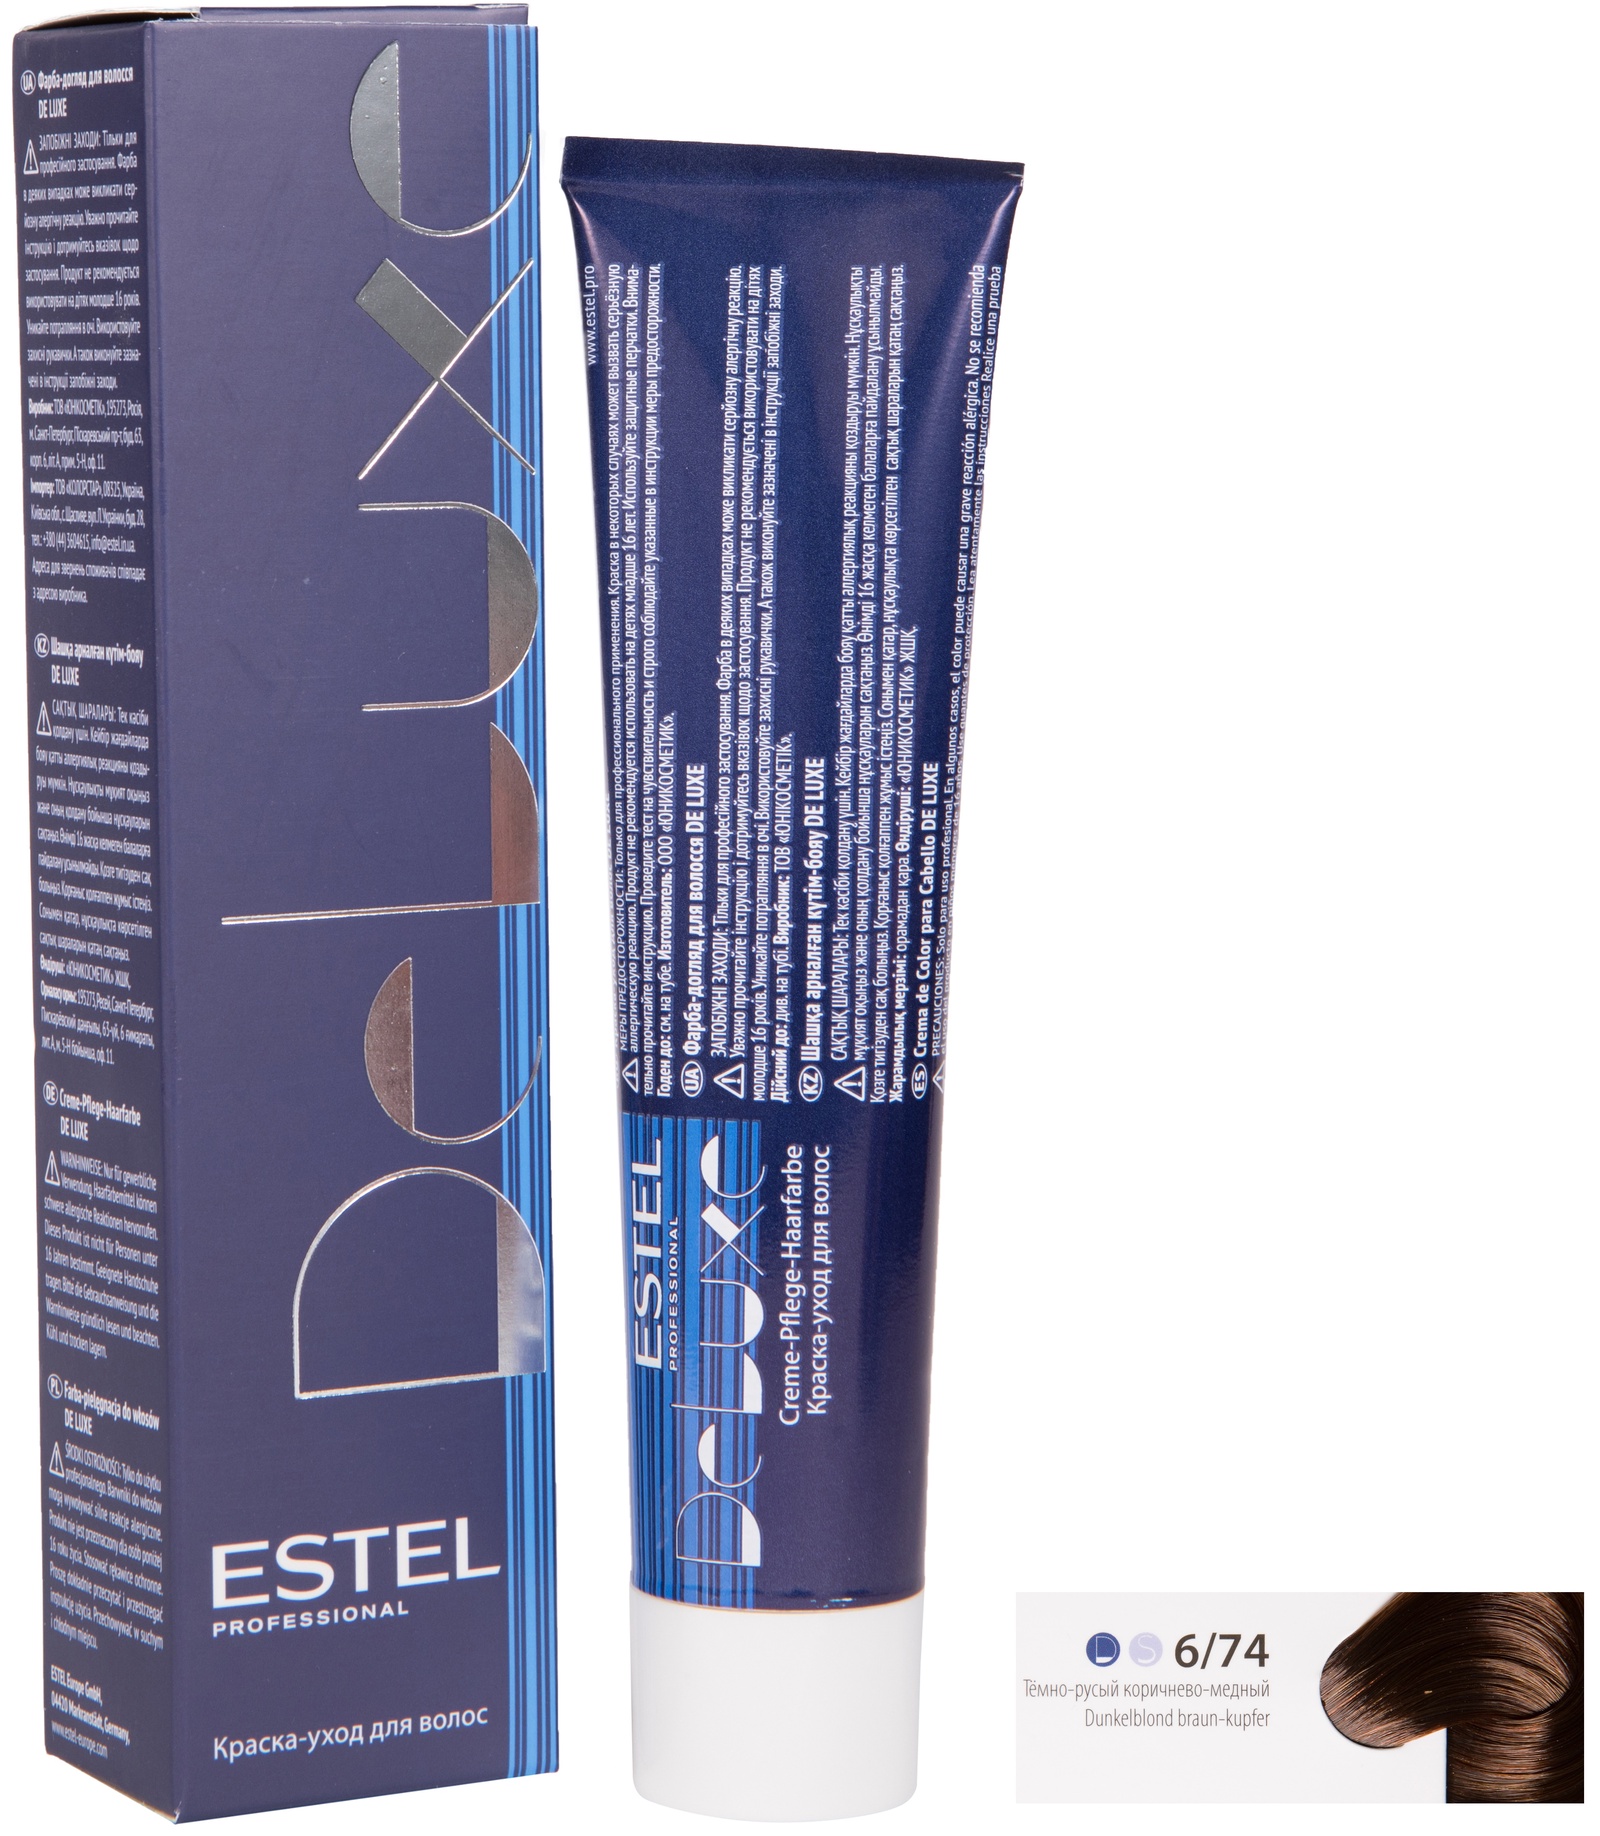 Краска для волос ESTEL PROFESSIONAL 6/74 DE LUXE краска-уход для окрашивания волос, темно-русый коричнево-медный 60 мл